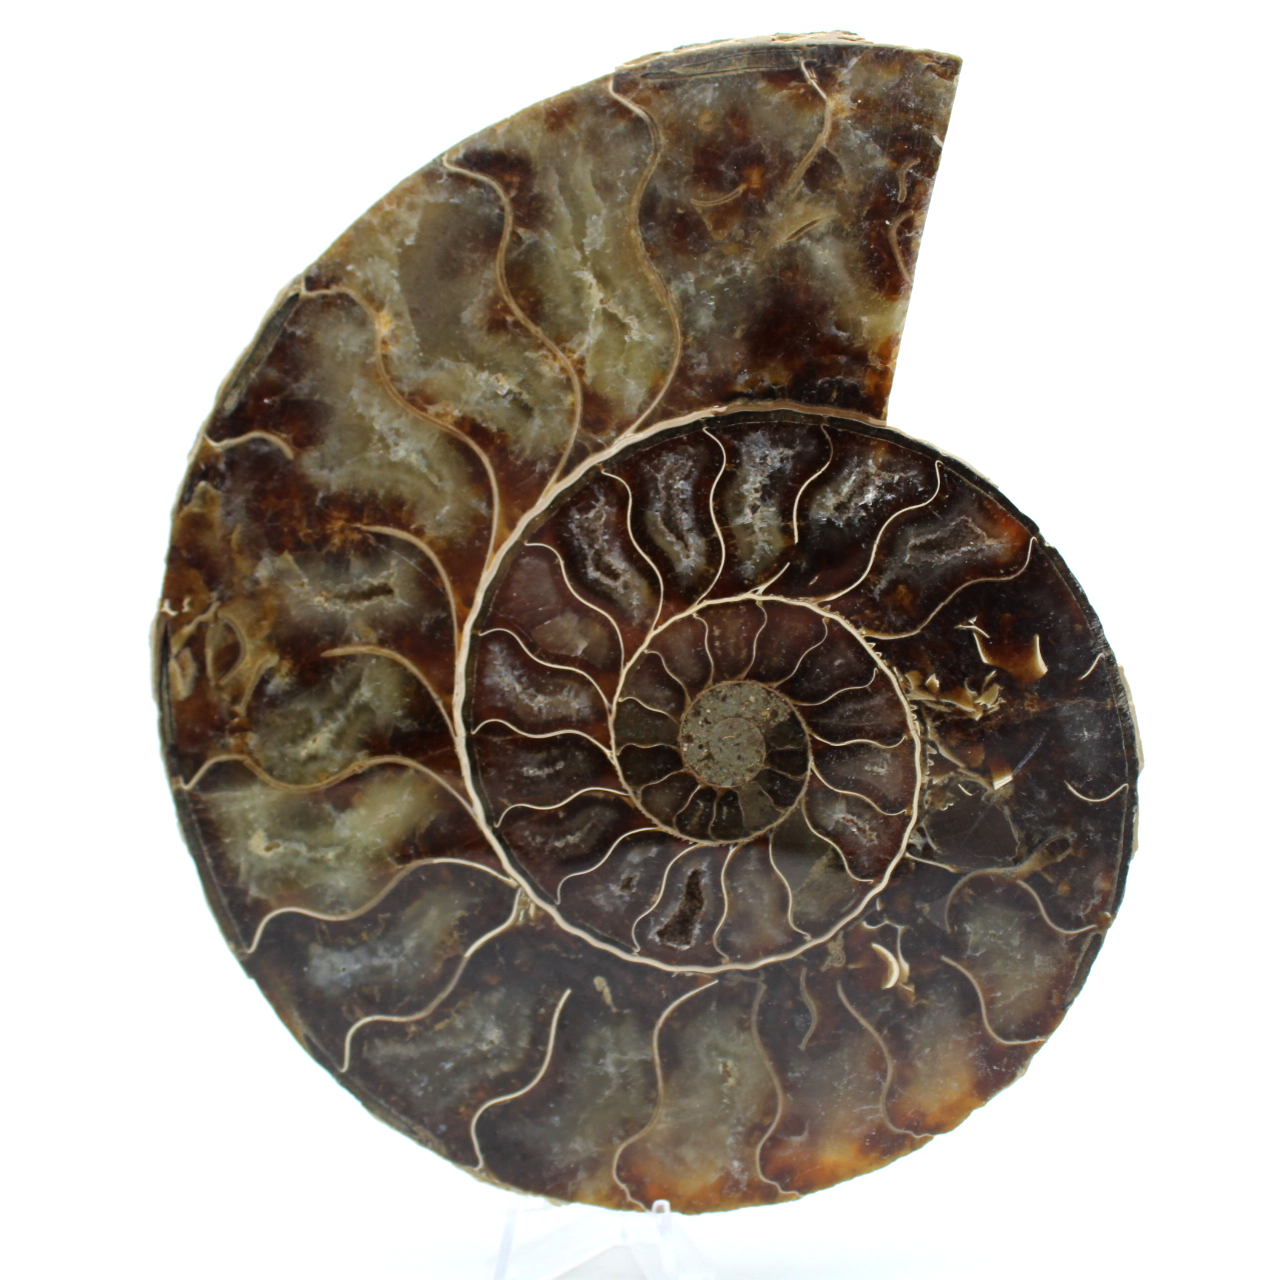 Polerad ammonit från madagaskar